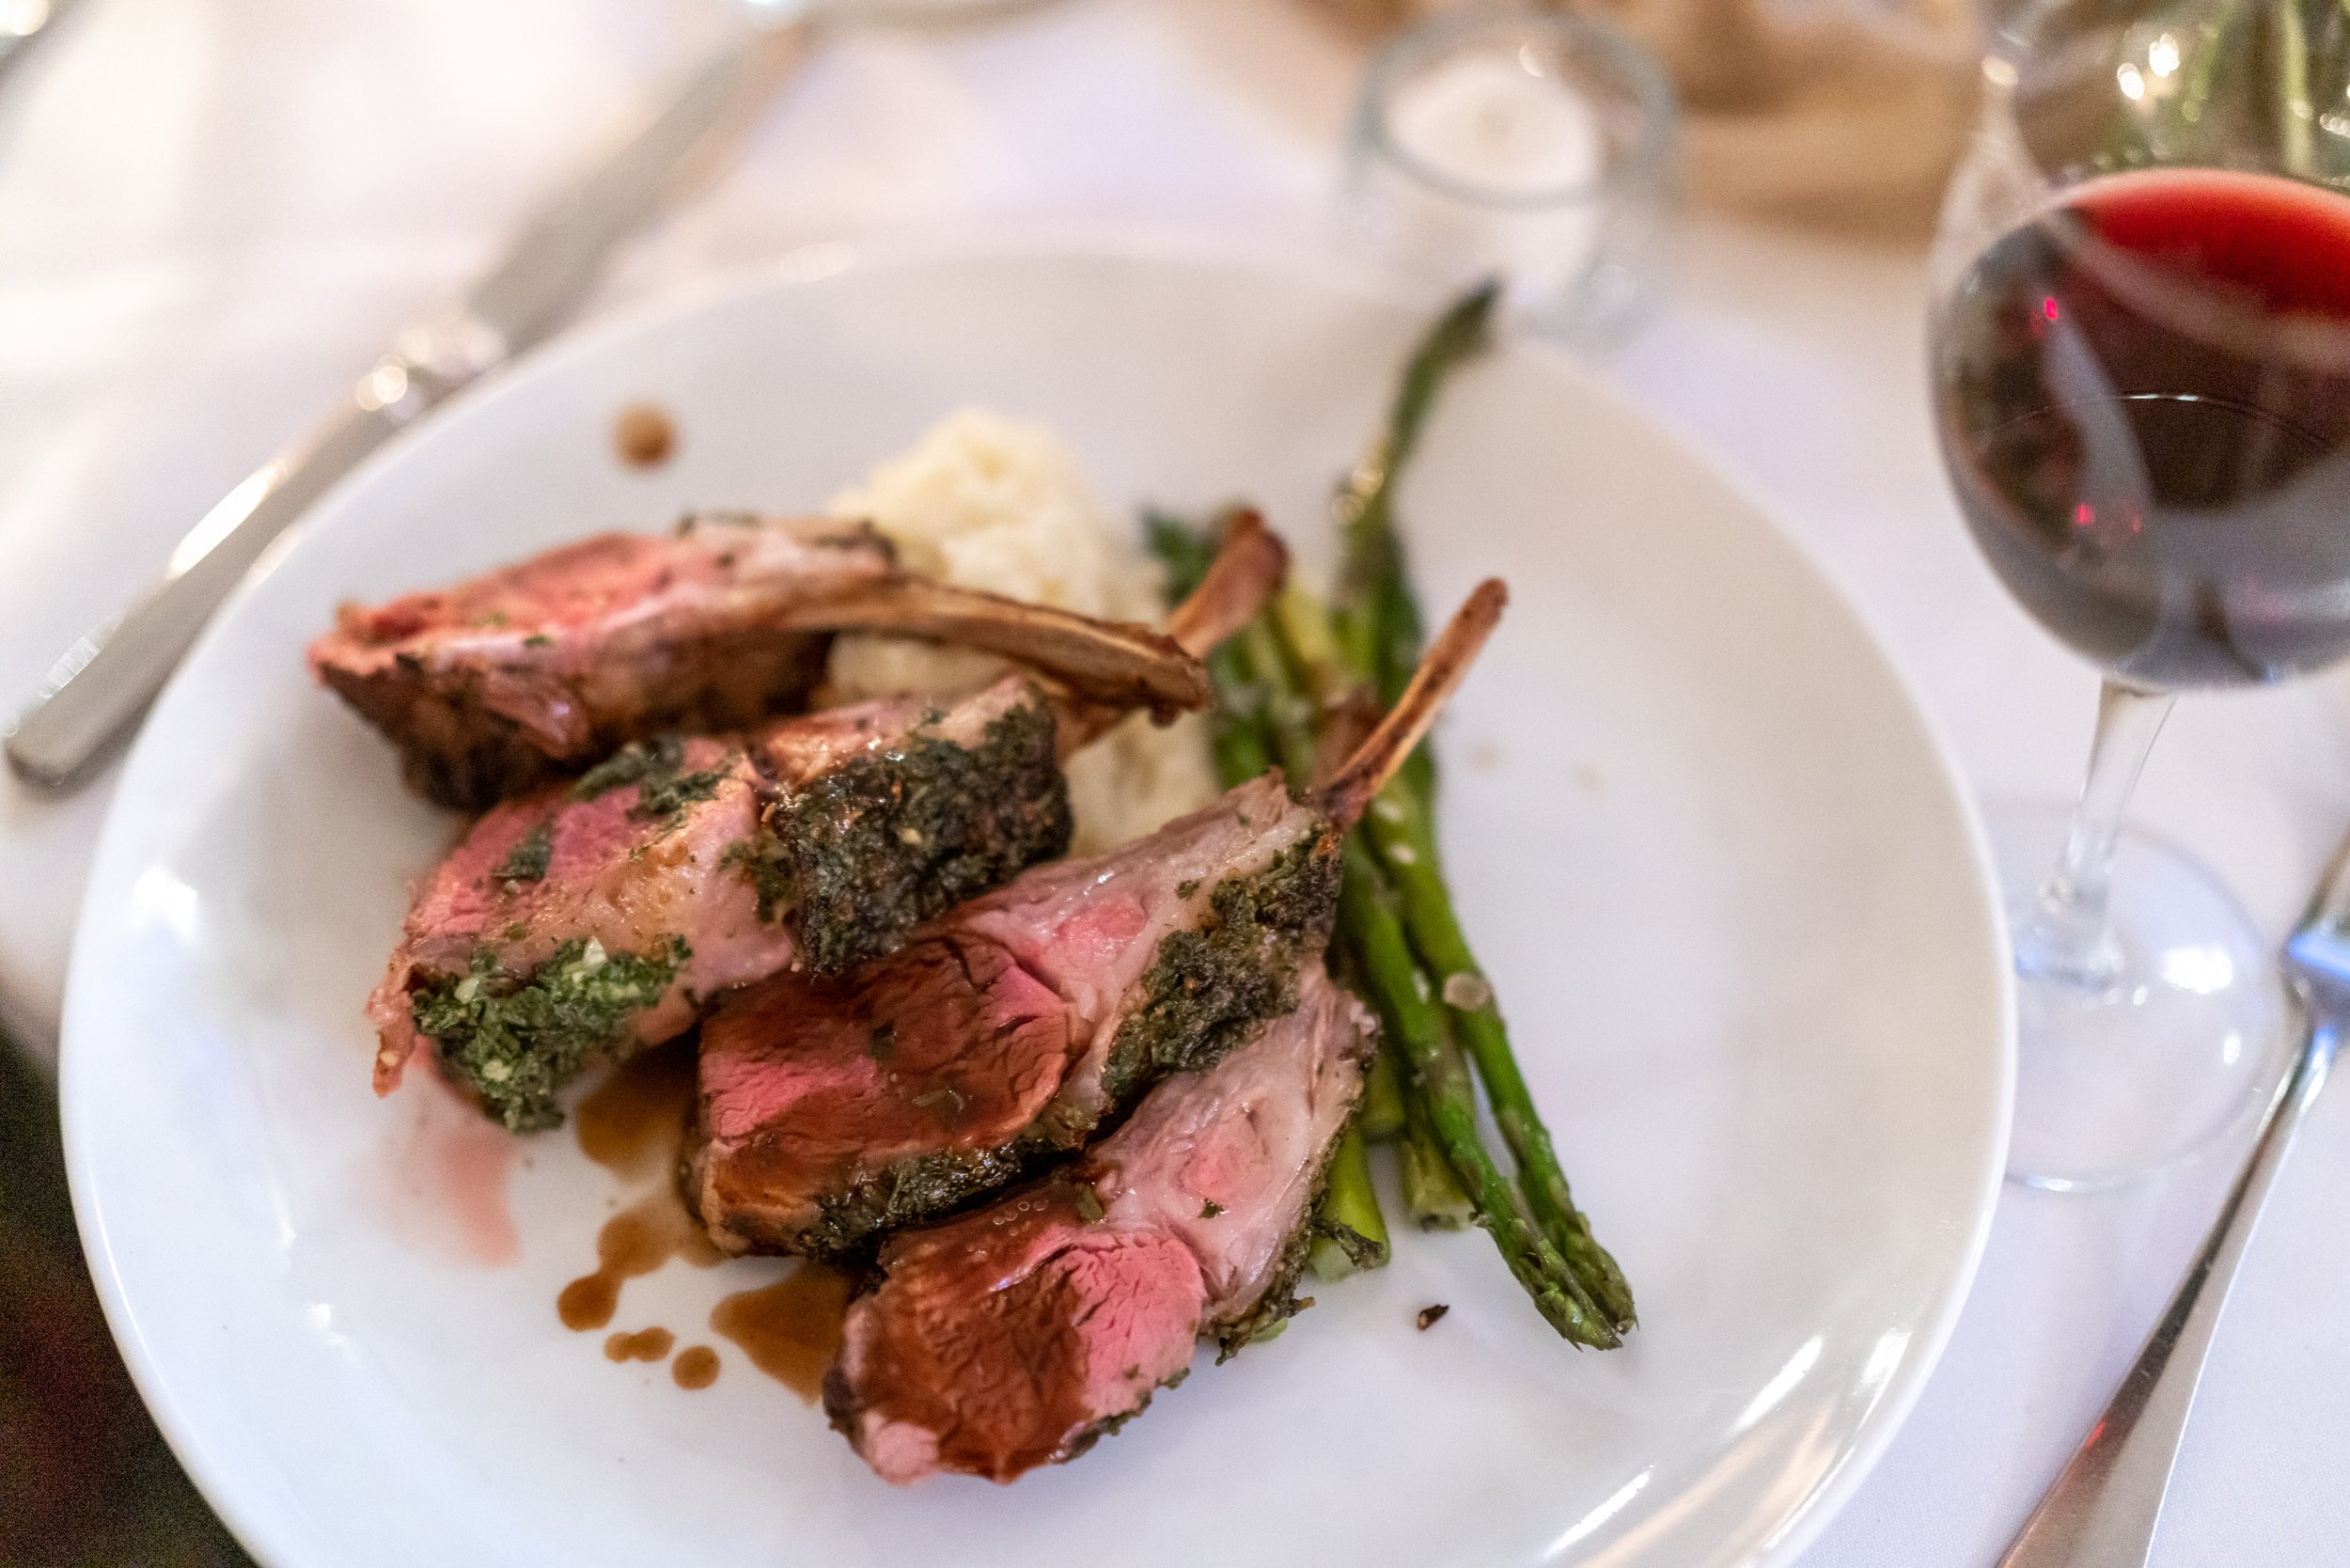 Lamb or steak dinner option at Old Angler's Inn wedding catering